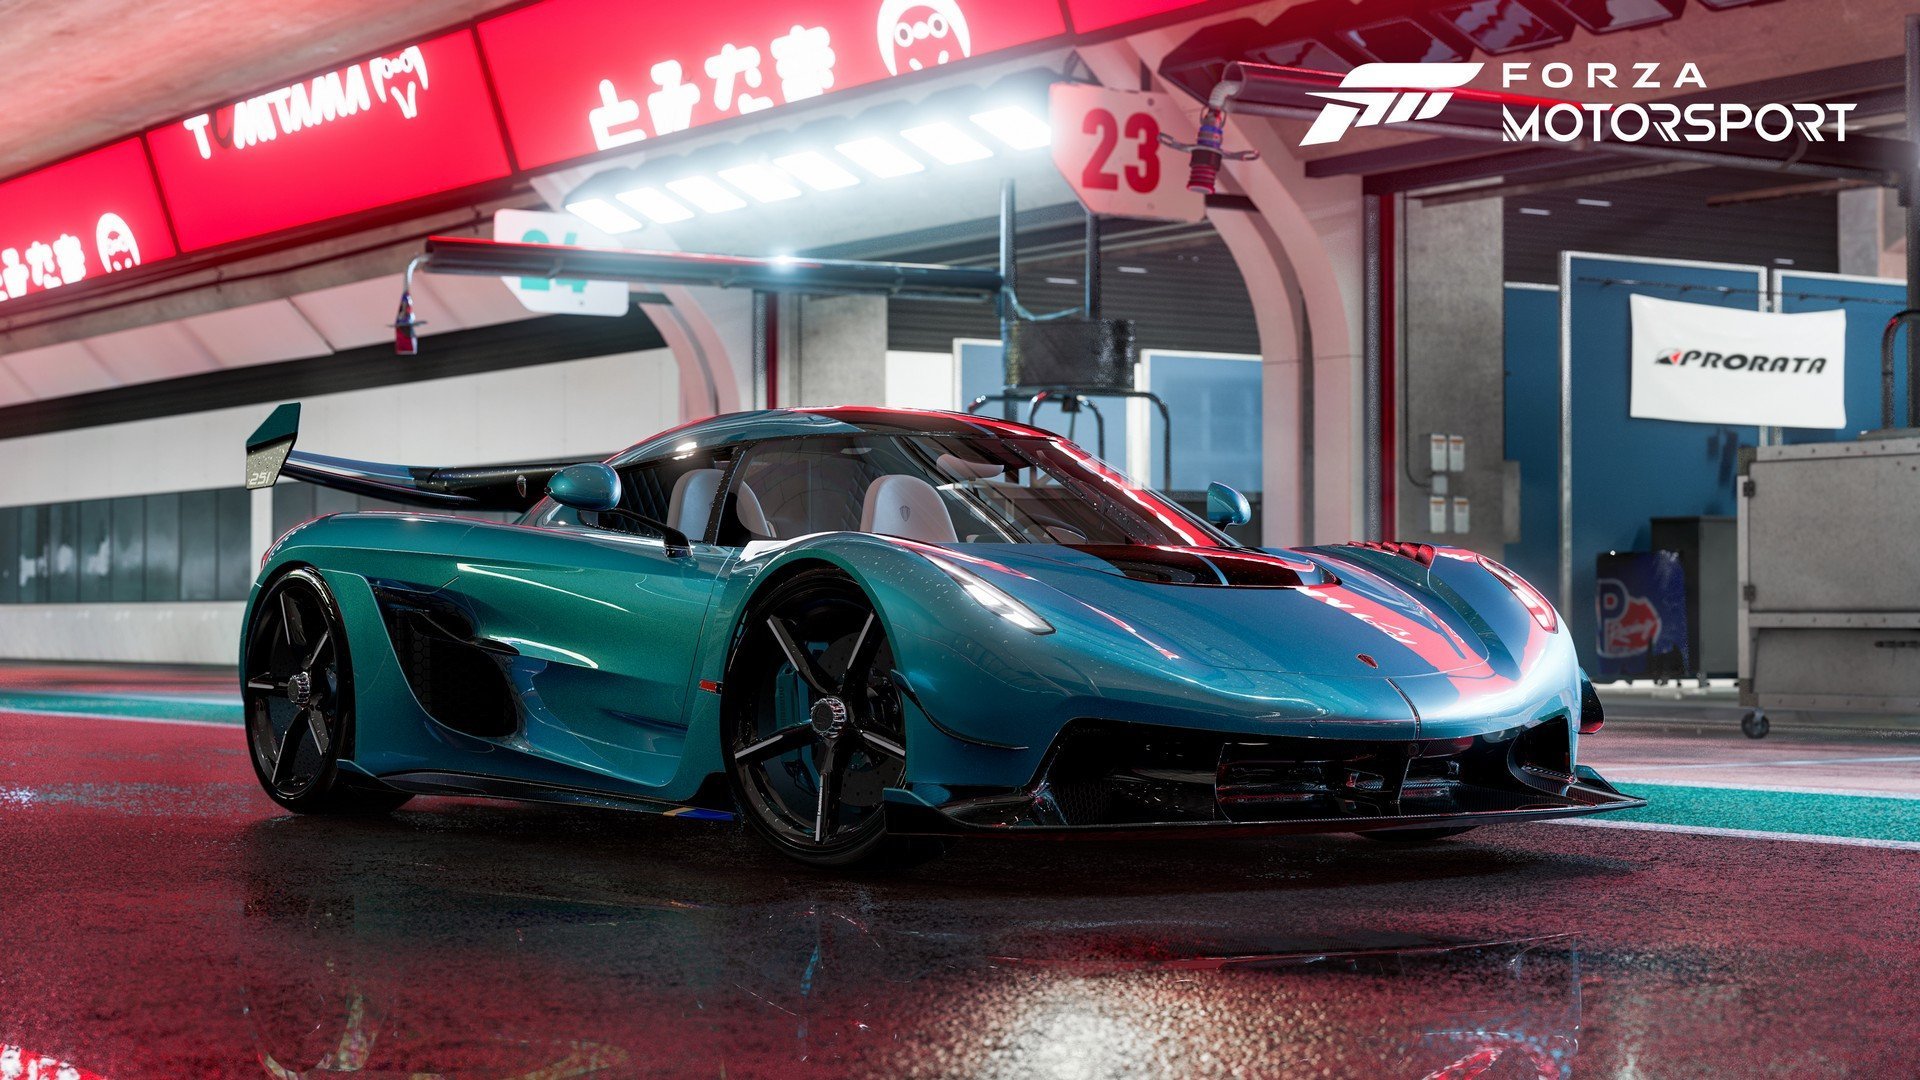 Forza Motorsport, le migliorie grafiche dal day one a oggi sono notevoli